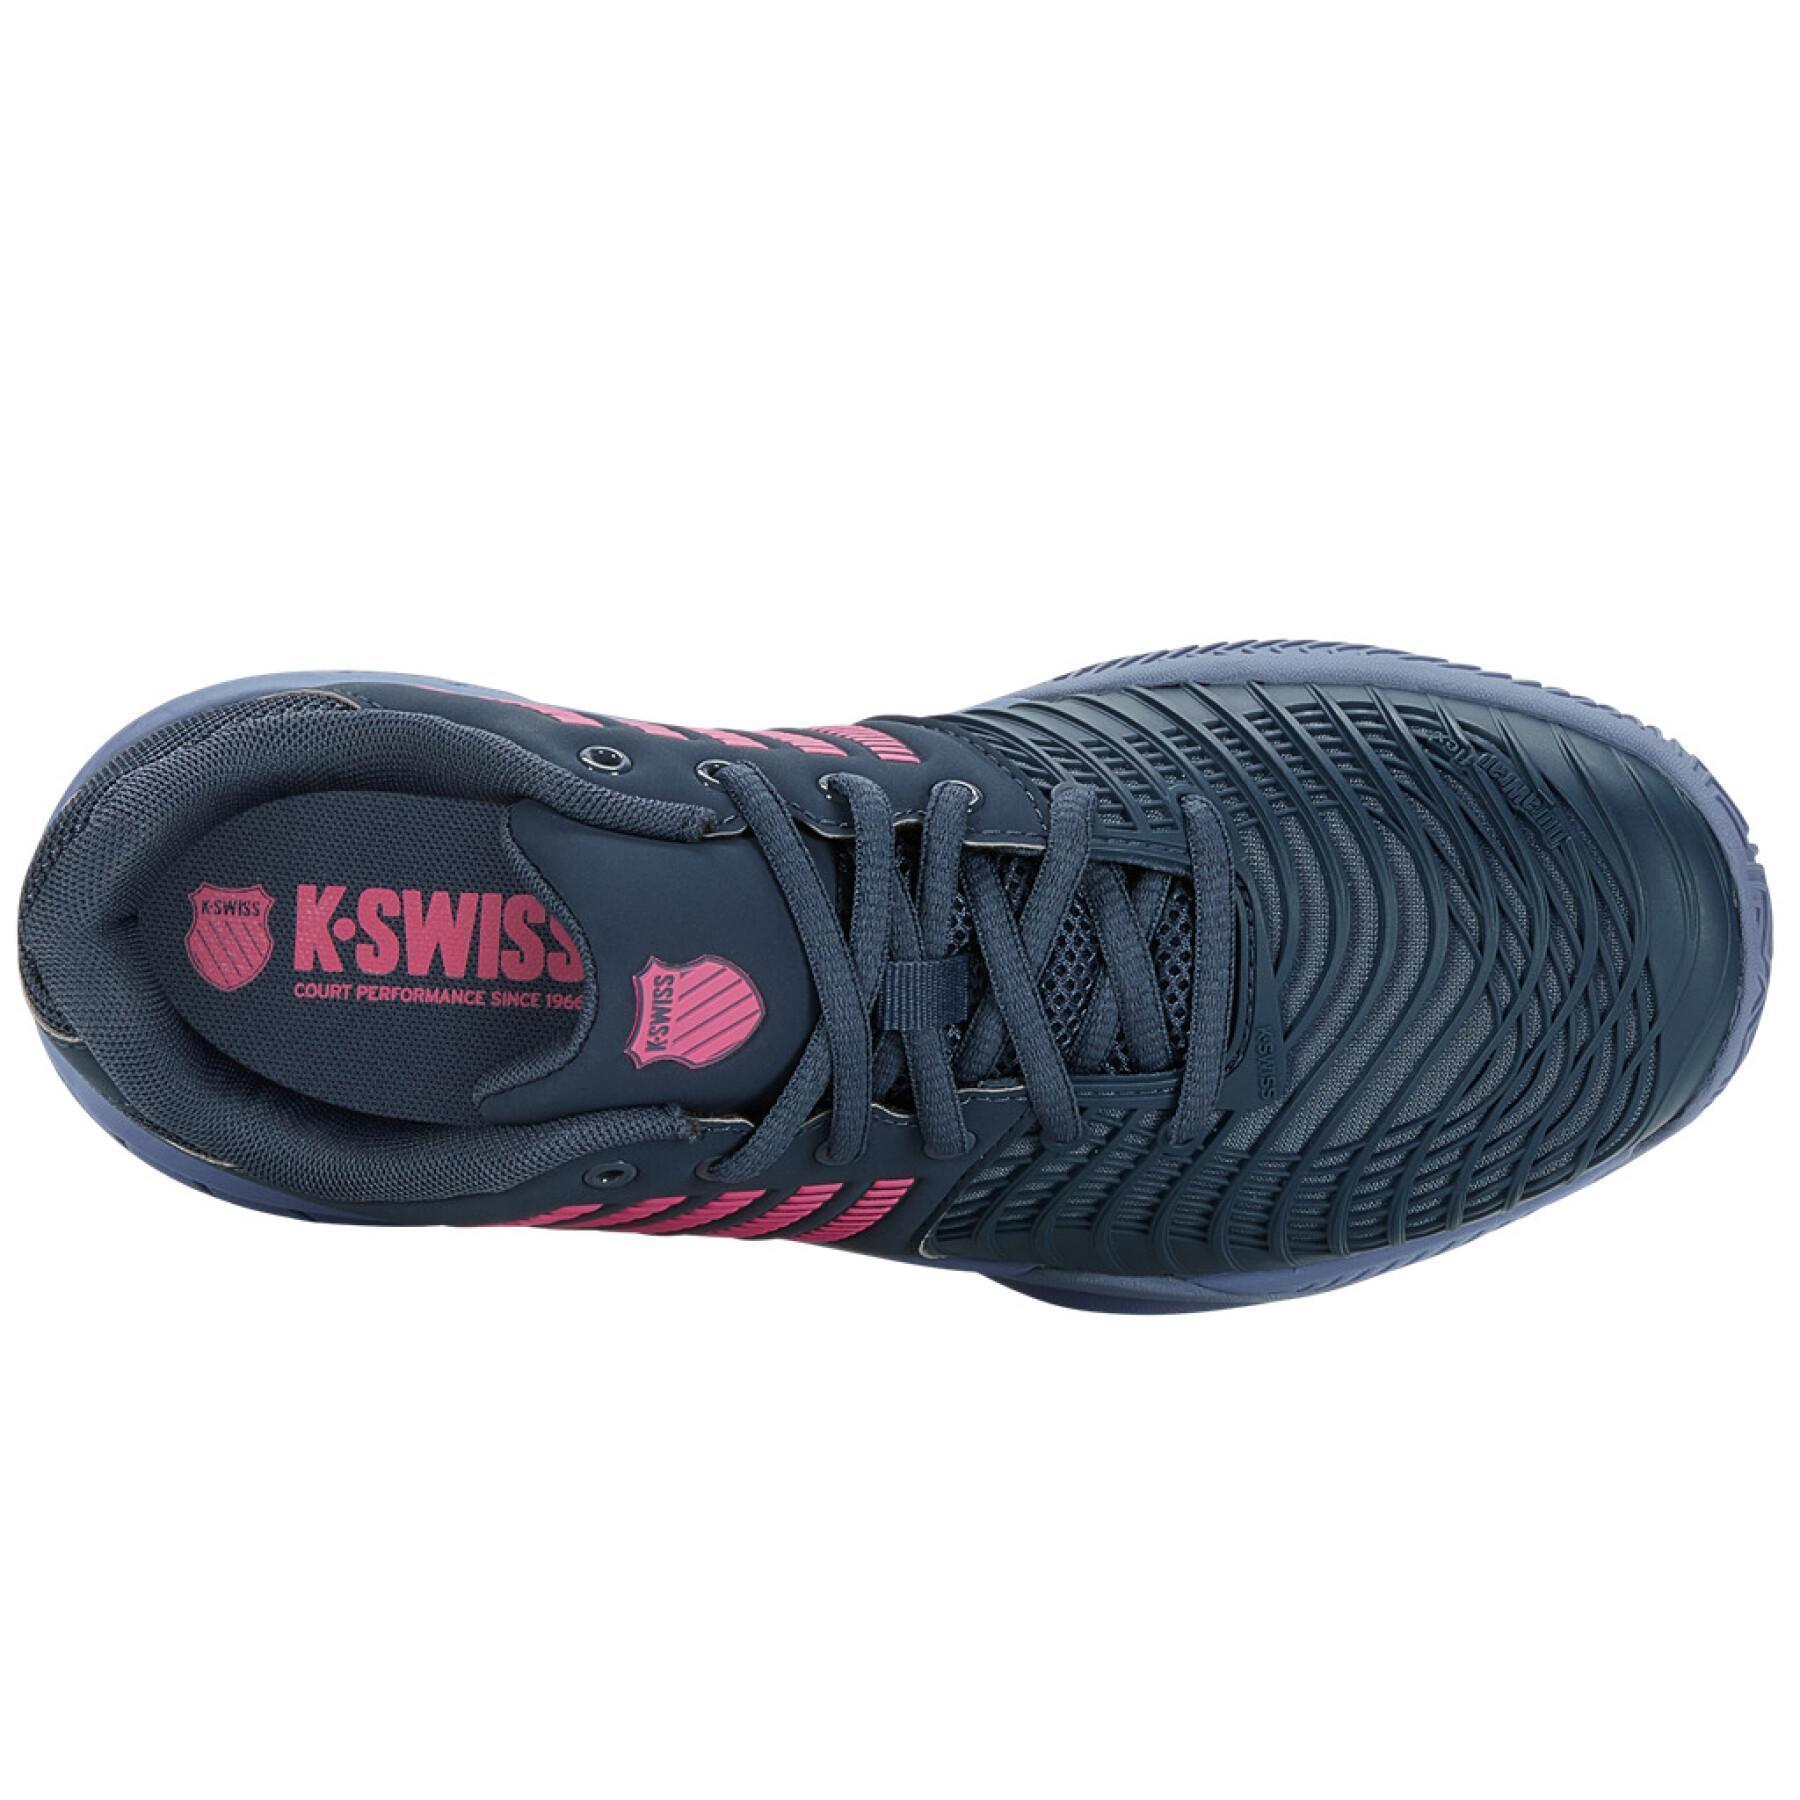 Chaussures de tennis femme K-Swiss Express Light 3 HB